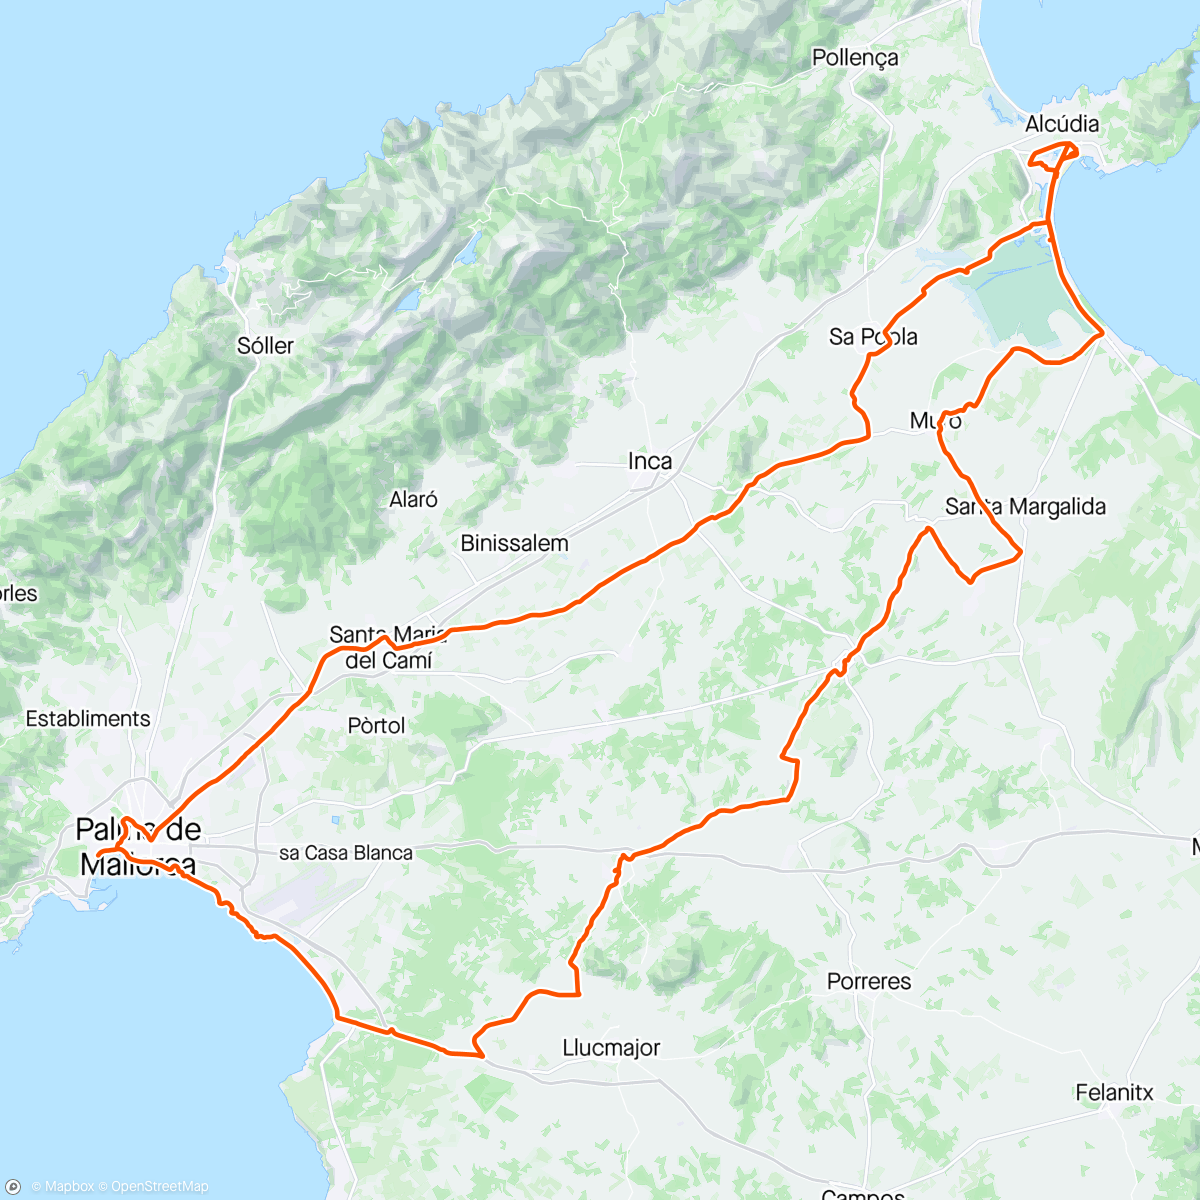 Mapa da atividade, Palma og rundtomkring